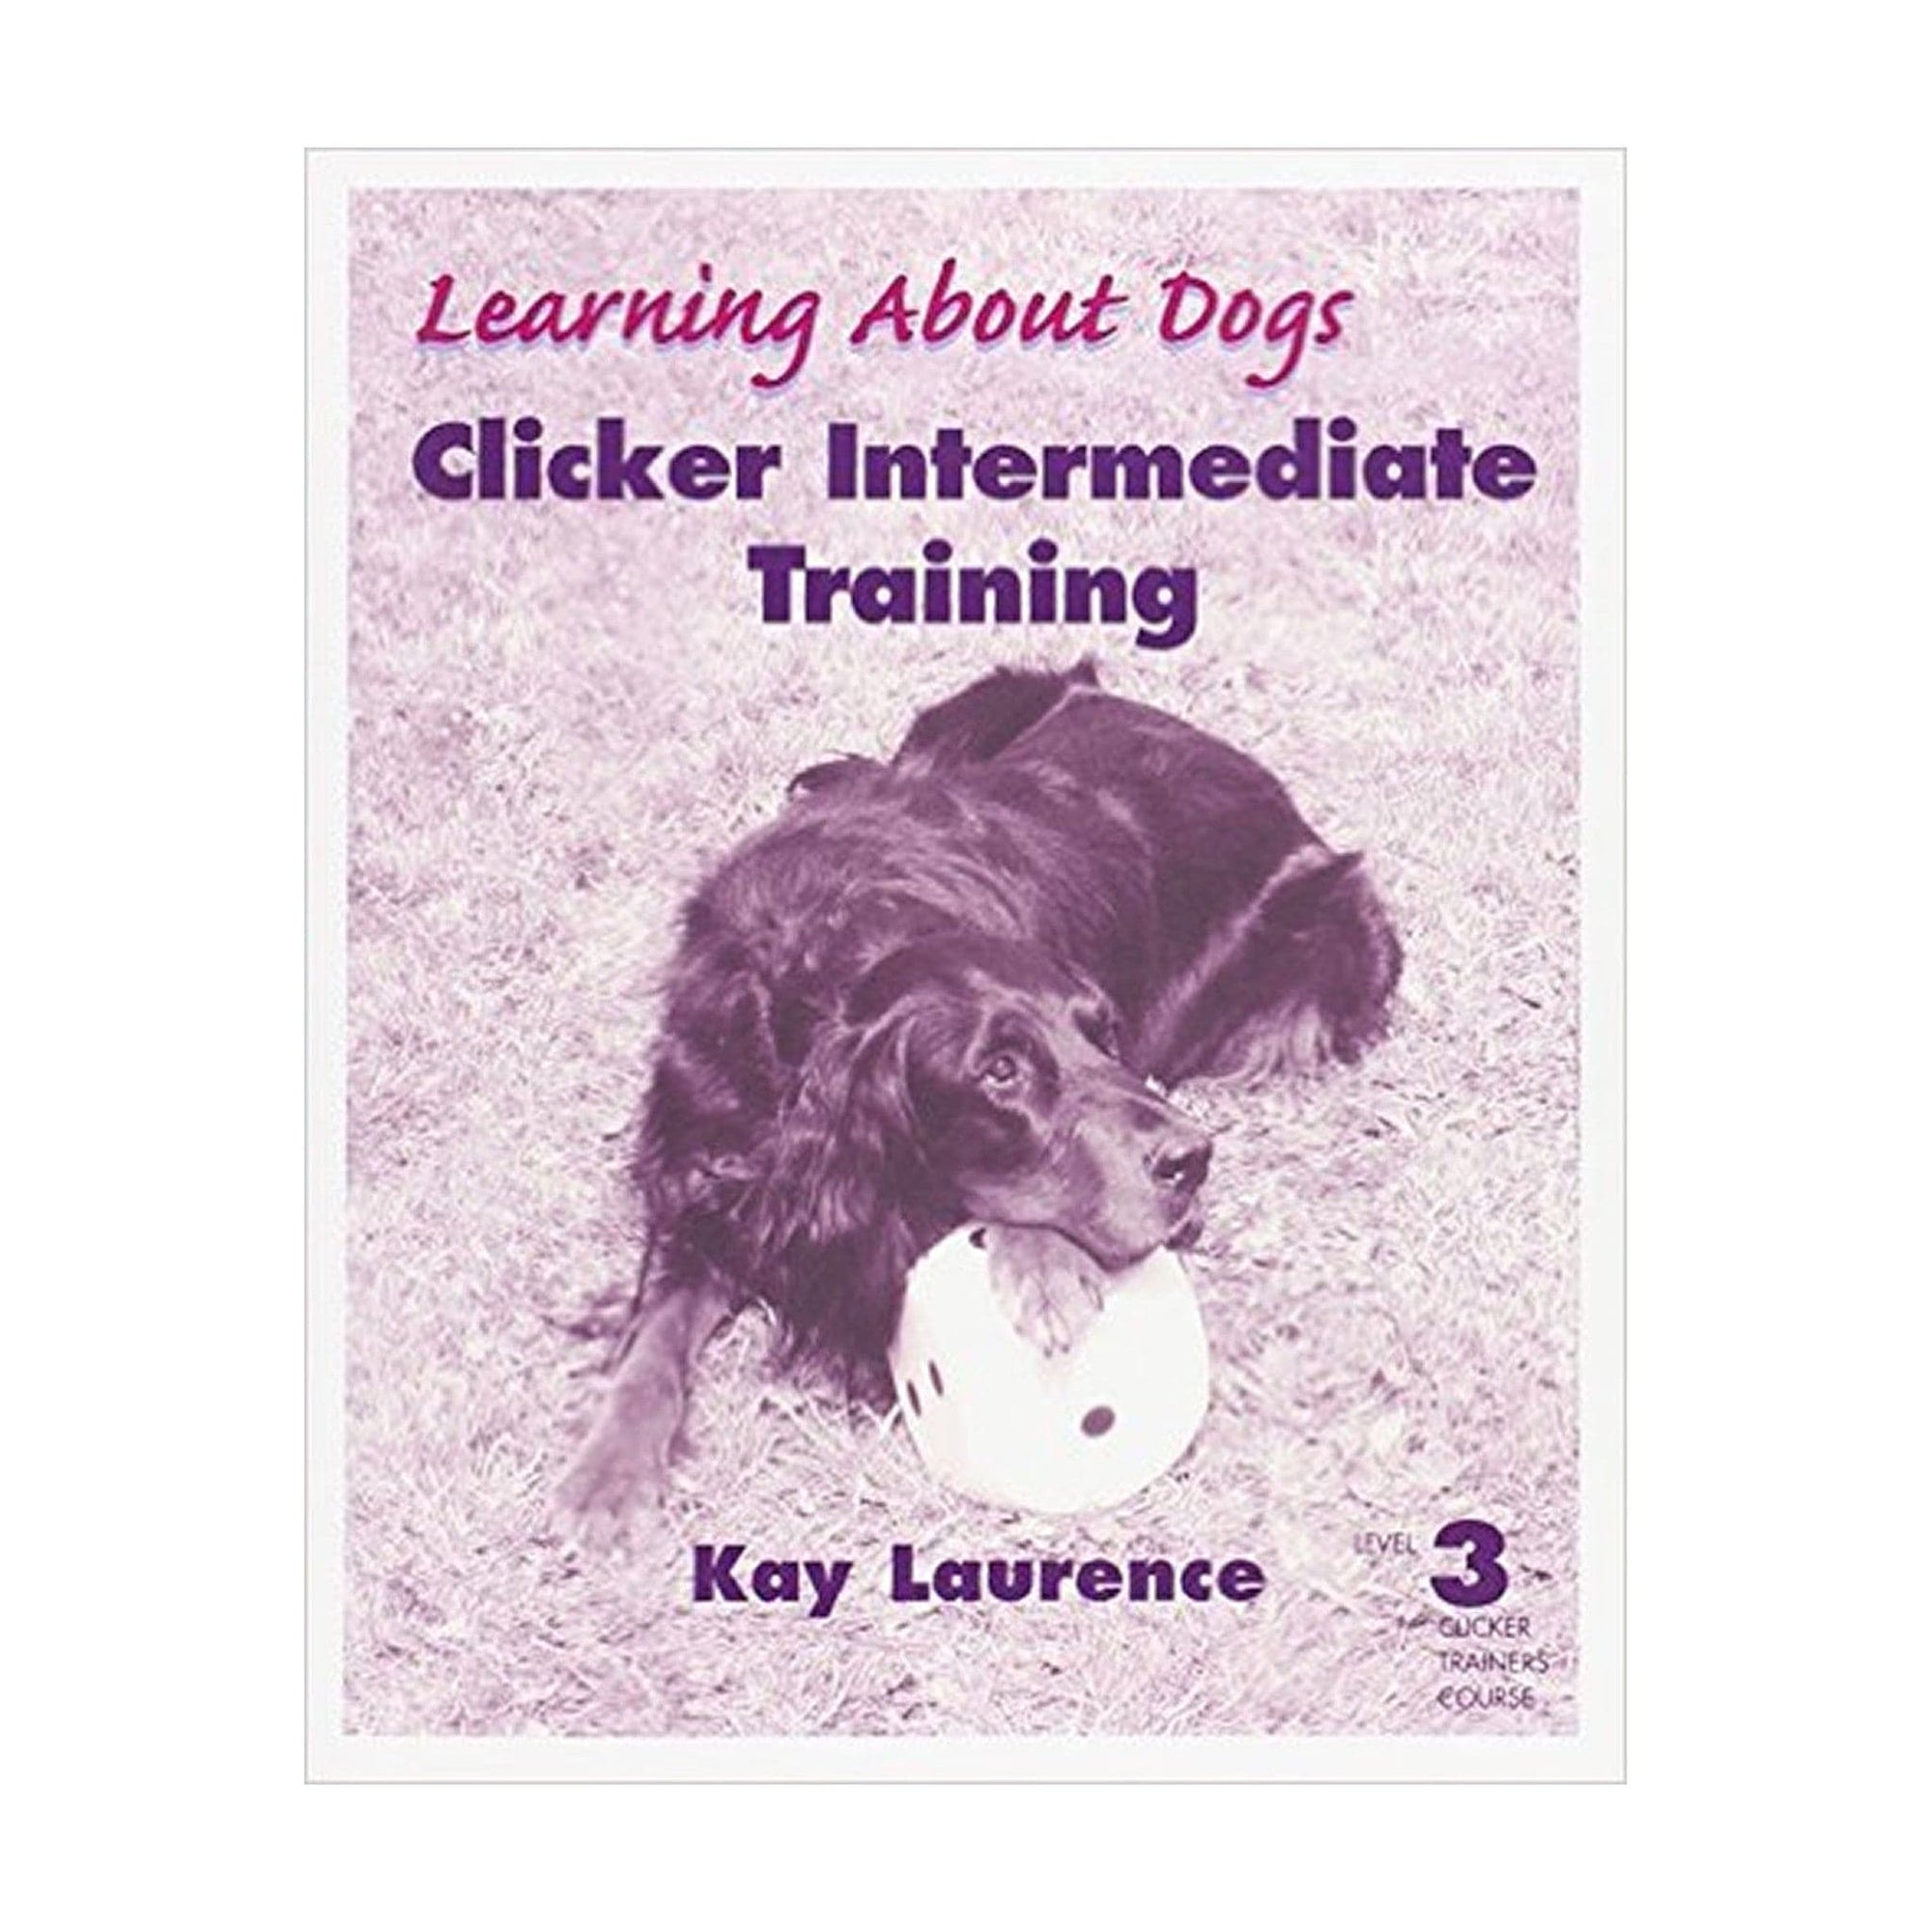 Clicker Intermediate Training: Level 3 Clicker Trainers Course